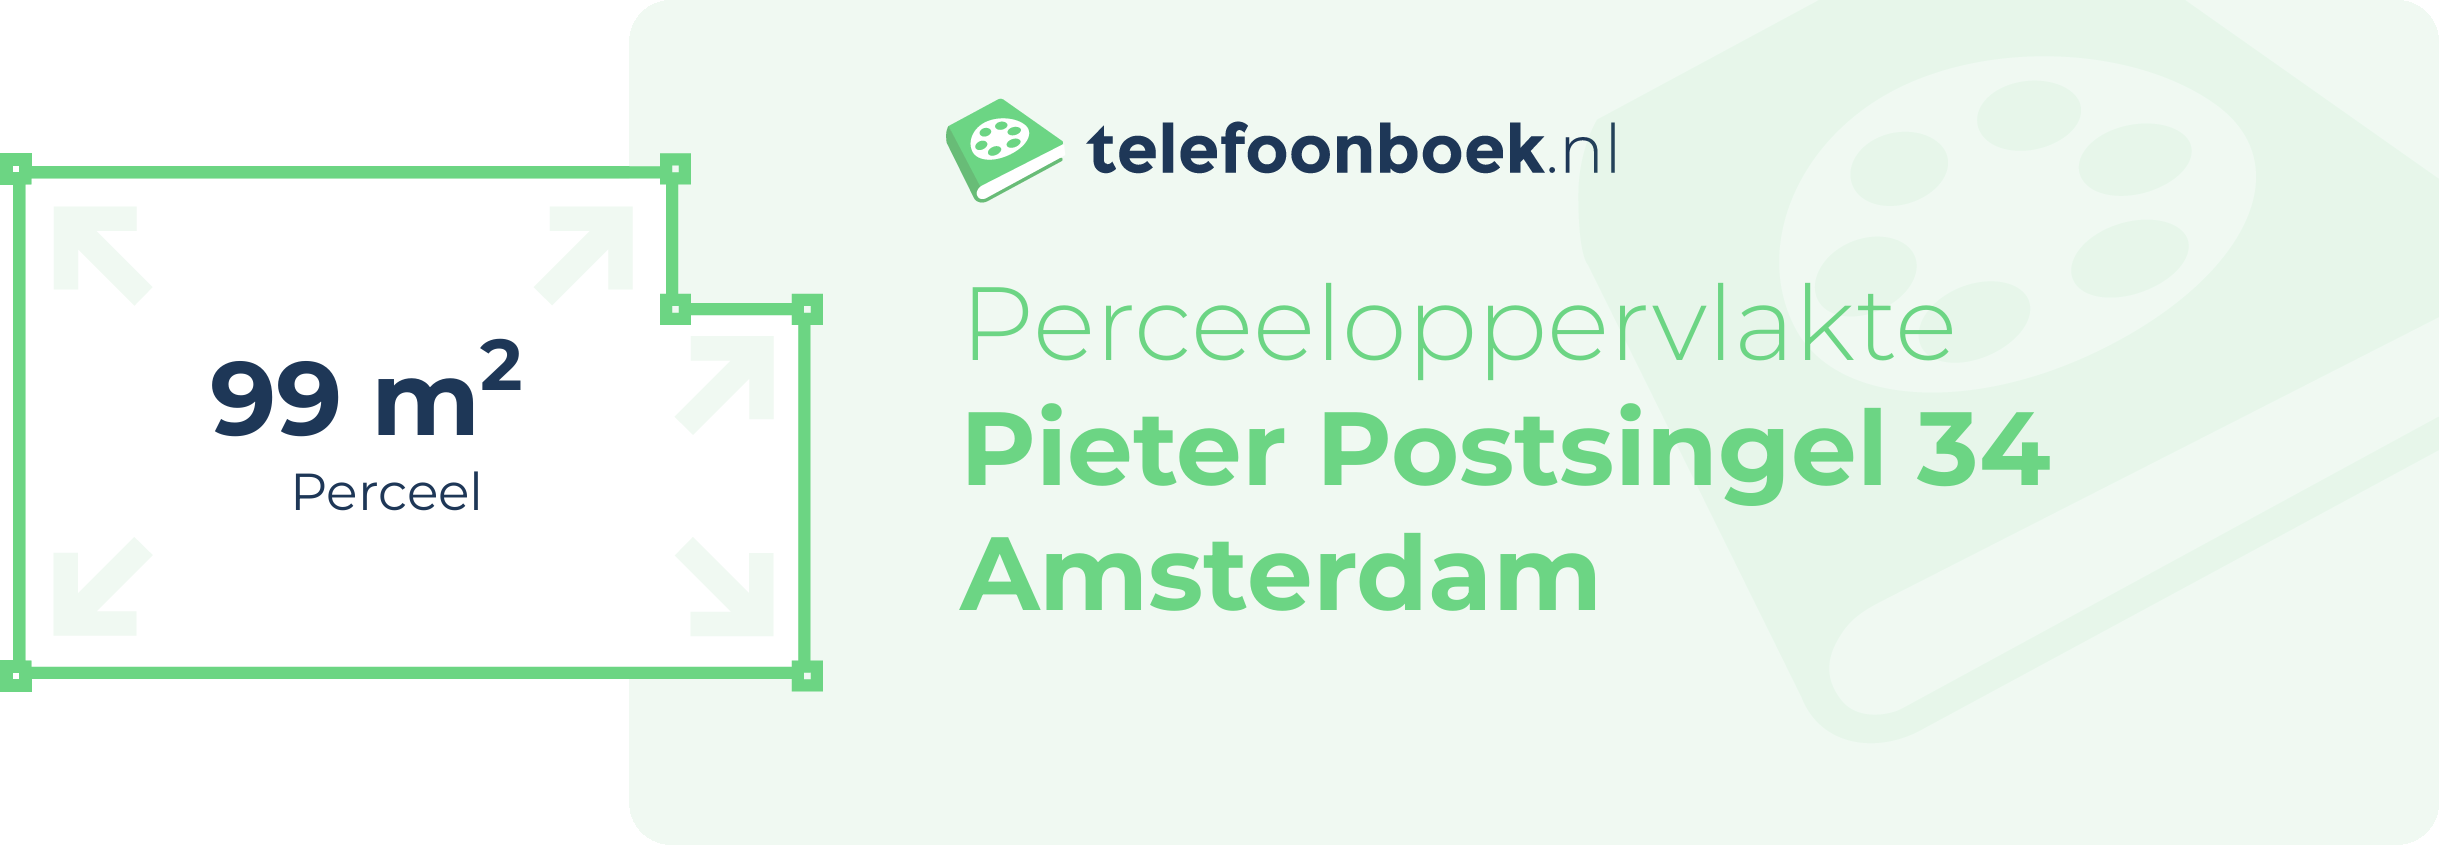 Perceeloppervlakte Pieter Postsingel 34 Amsterdam